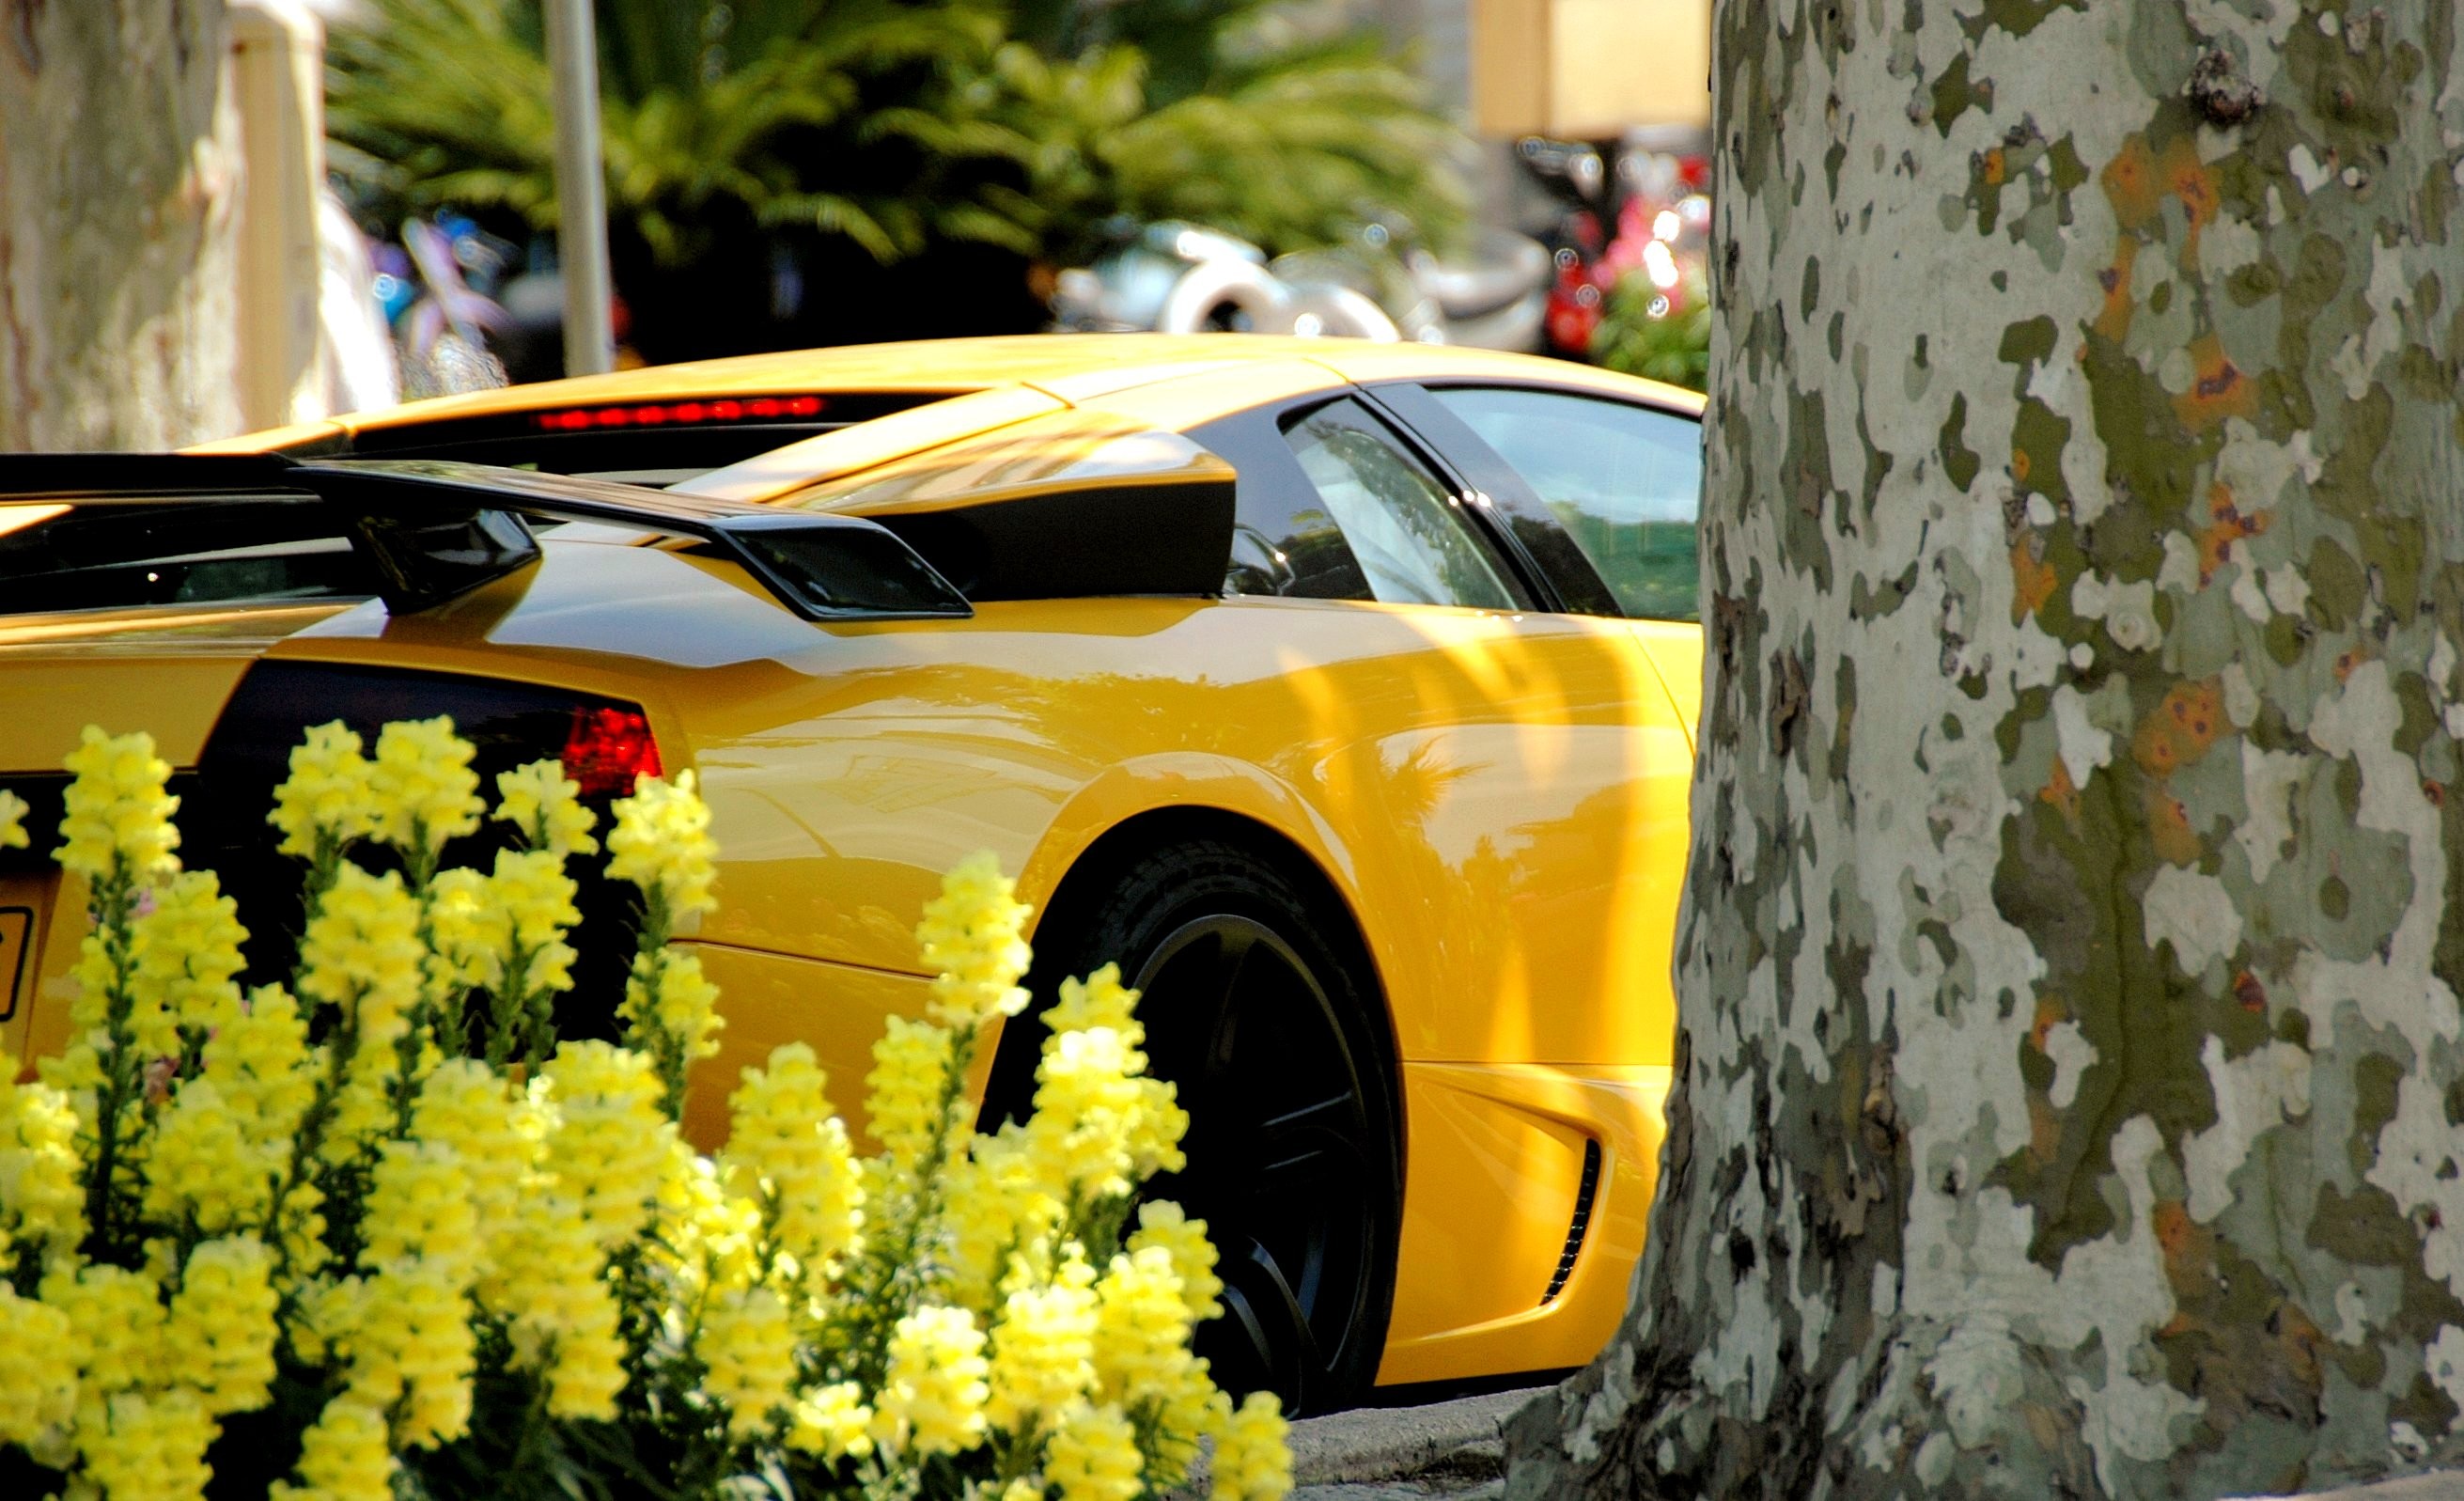 General 2622x1597 car yellow cars Lamborghini flowers vehicle Lamborghini Murcielago italian cars Volkswagen Group